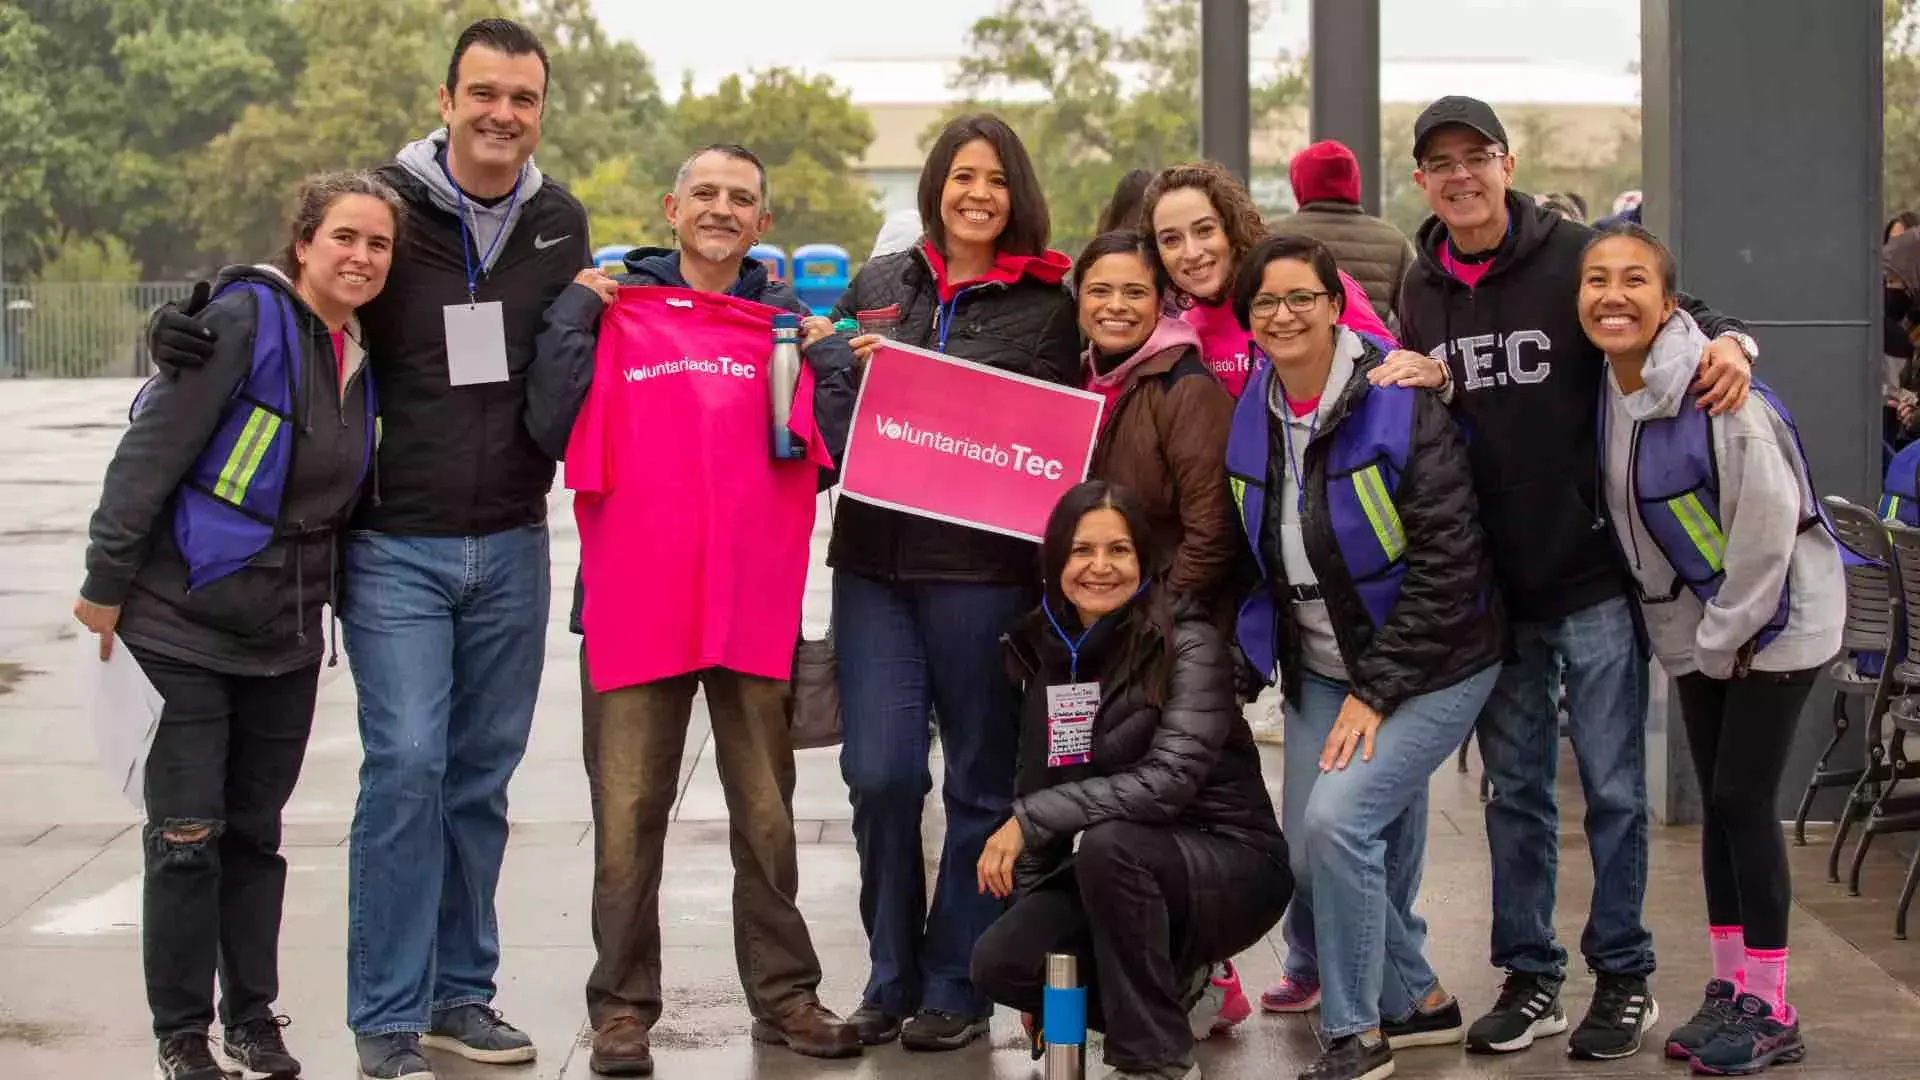 Sorteos Tec, Tec Milenio, Tec Salud y el Tec de Monterrey unen esfuerzos en el Día del Voluntariado.